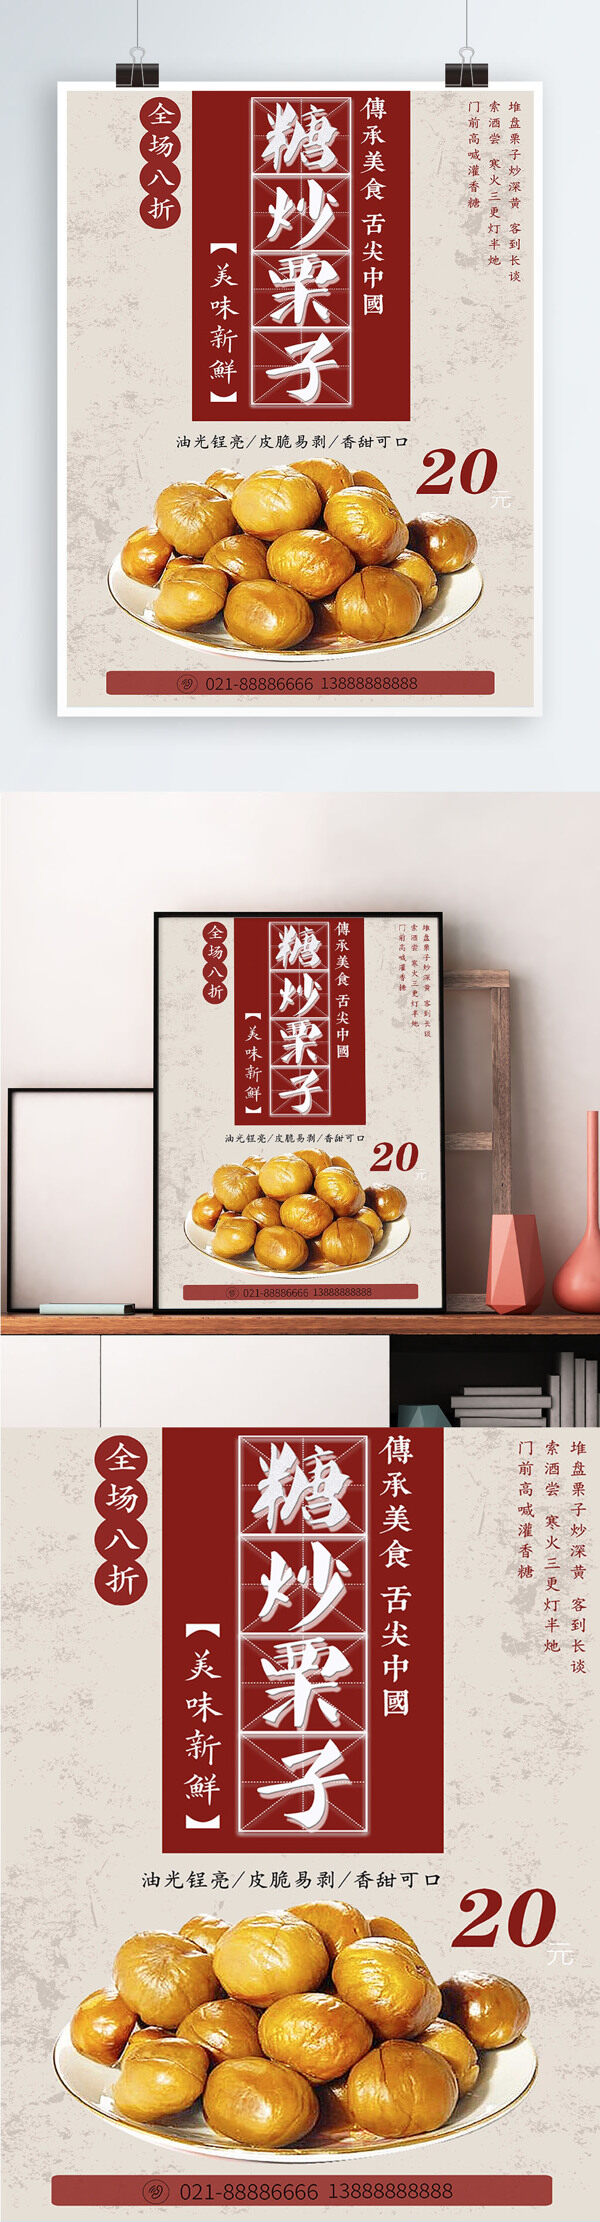 白色背景简约中国风美味糖炒栗子宣传海报